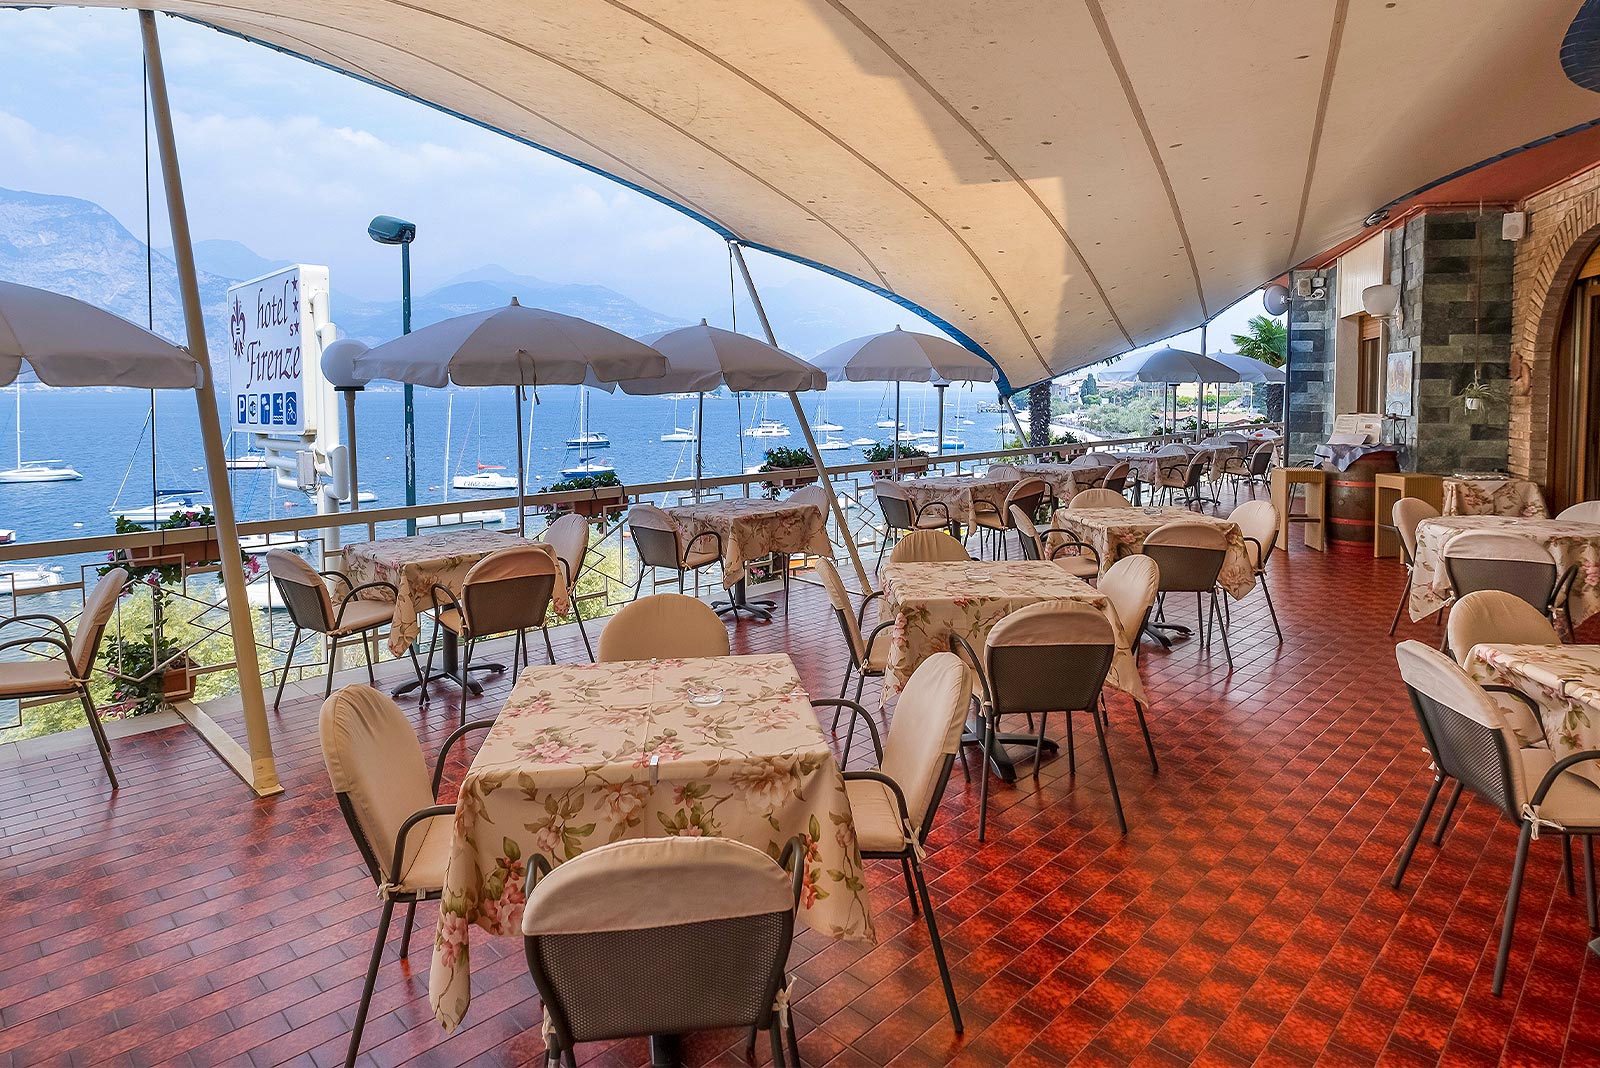 Terrasse mit Aussicht 3 Sterne Hotel Firenze am Gardasee